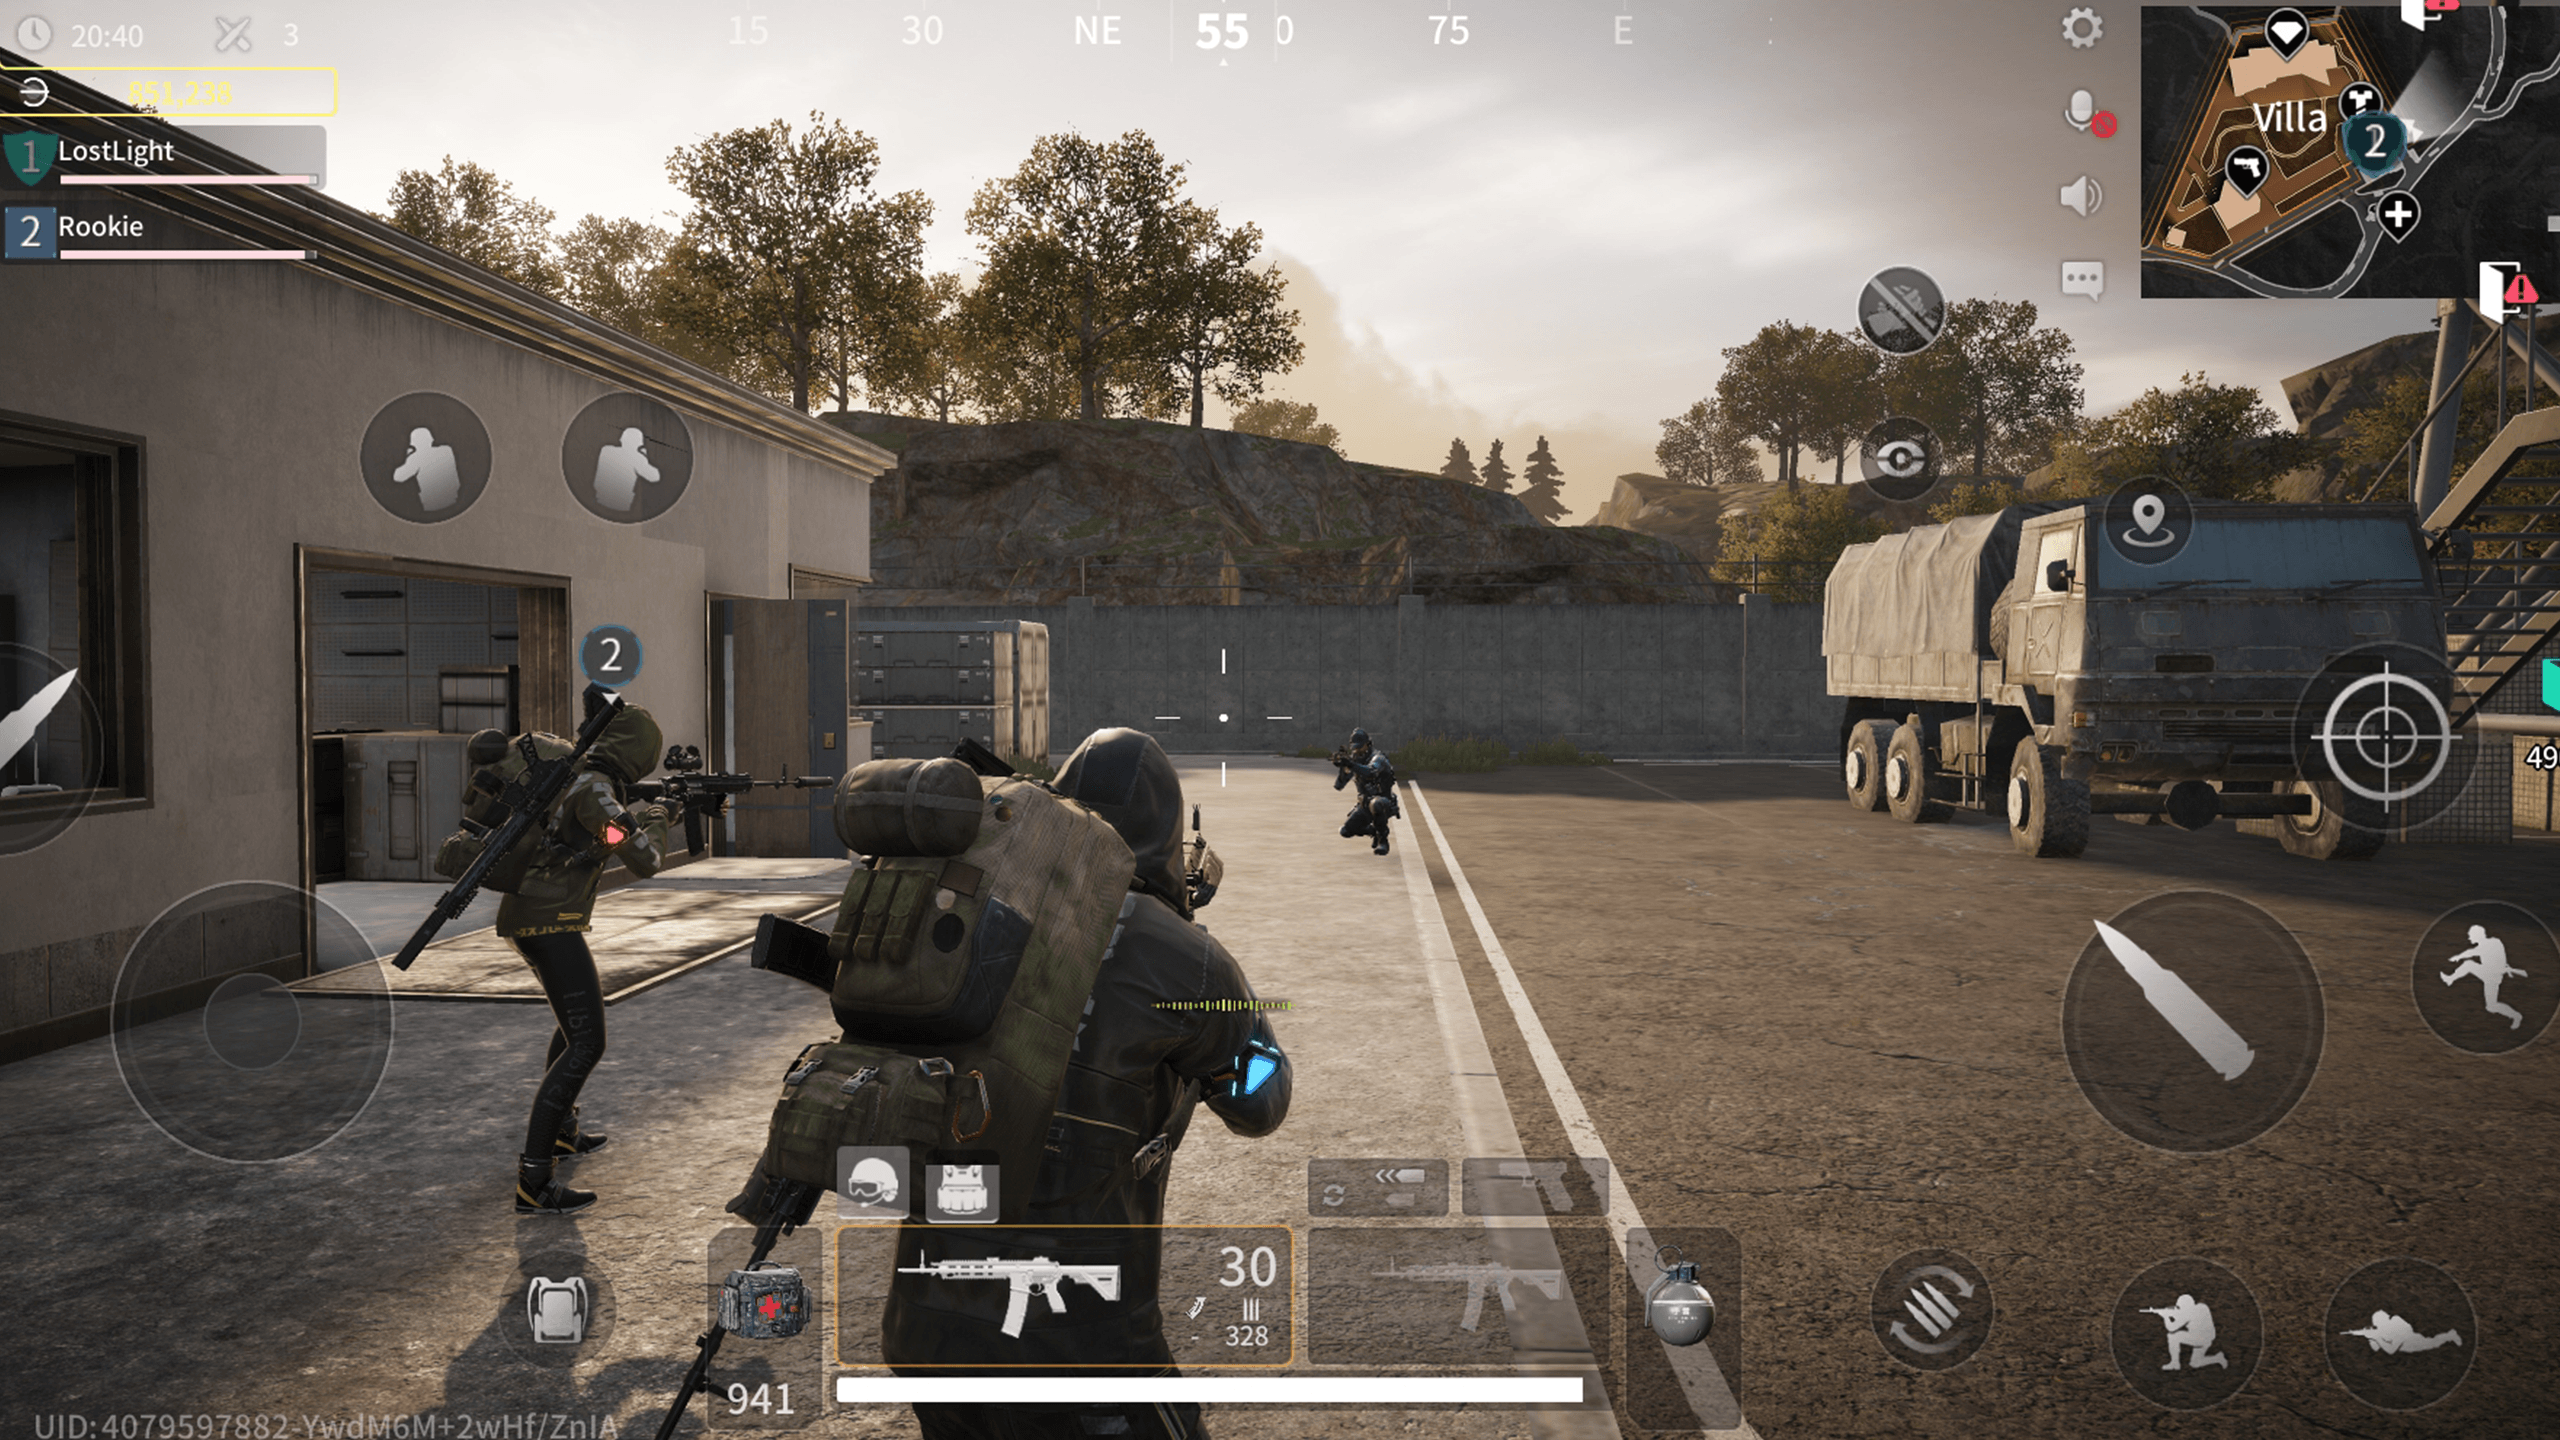 NetEase Games veröffentlicht Lost Light, ein Survival-Shooter-Spiel für Android- und iOS-Geräte